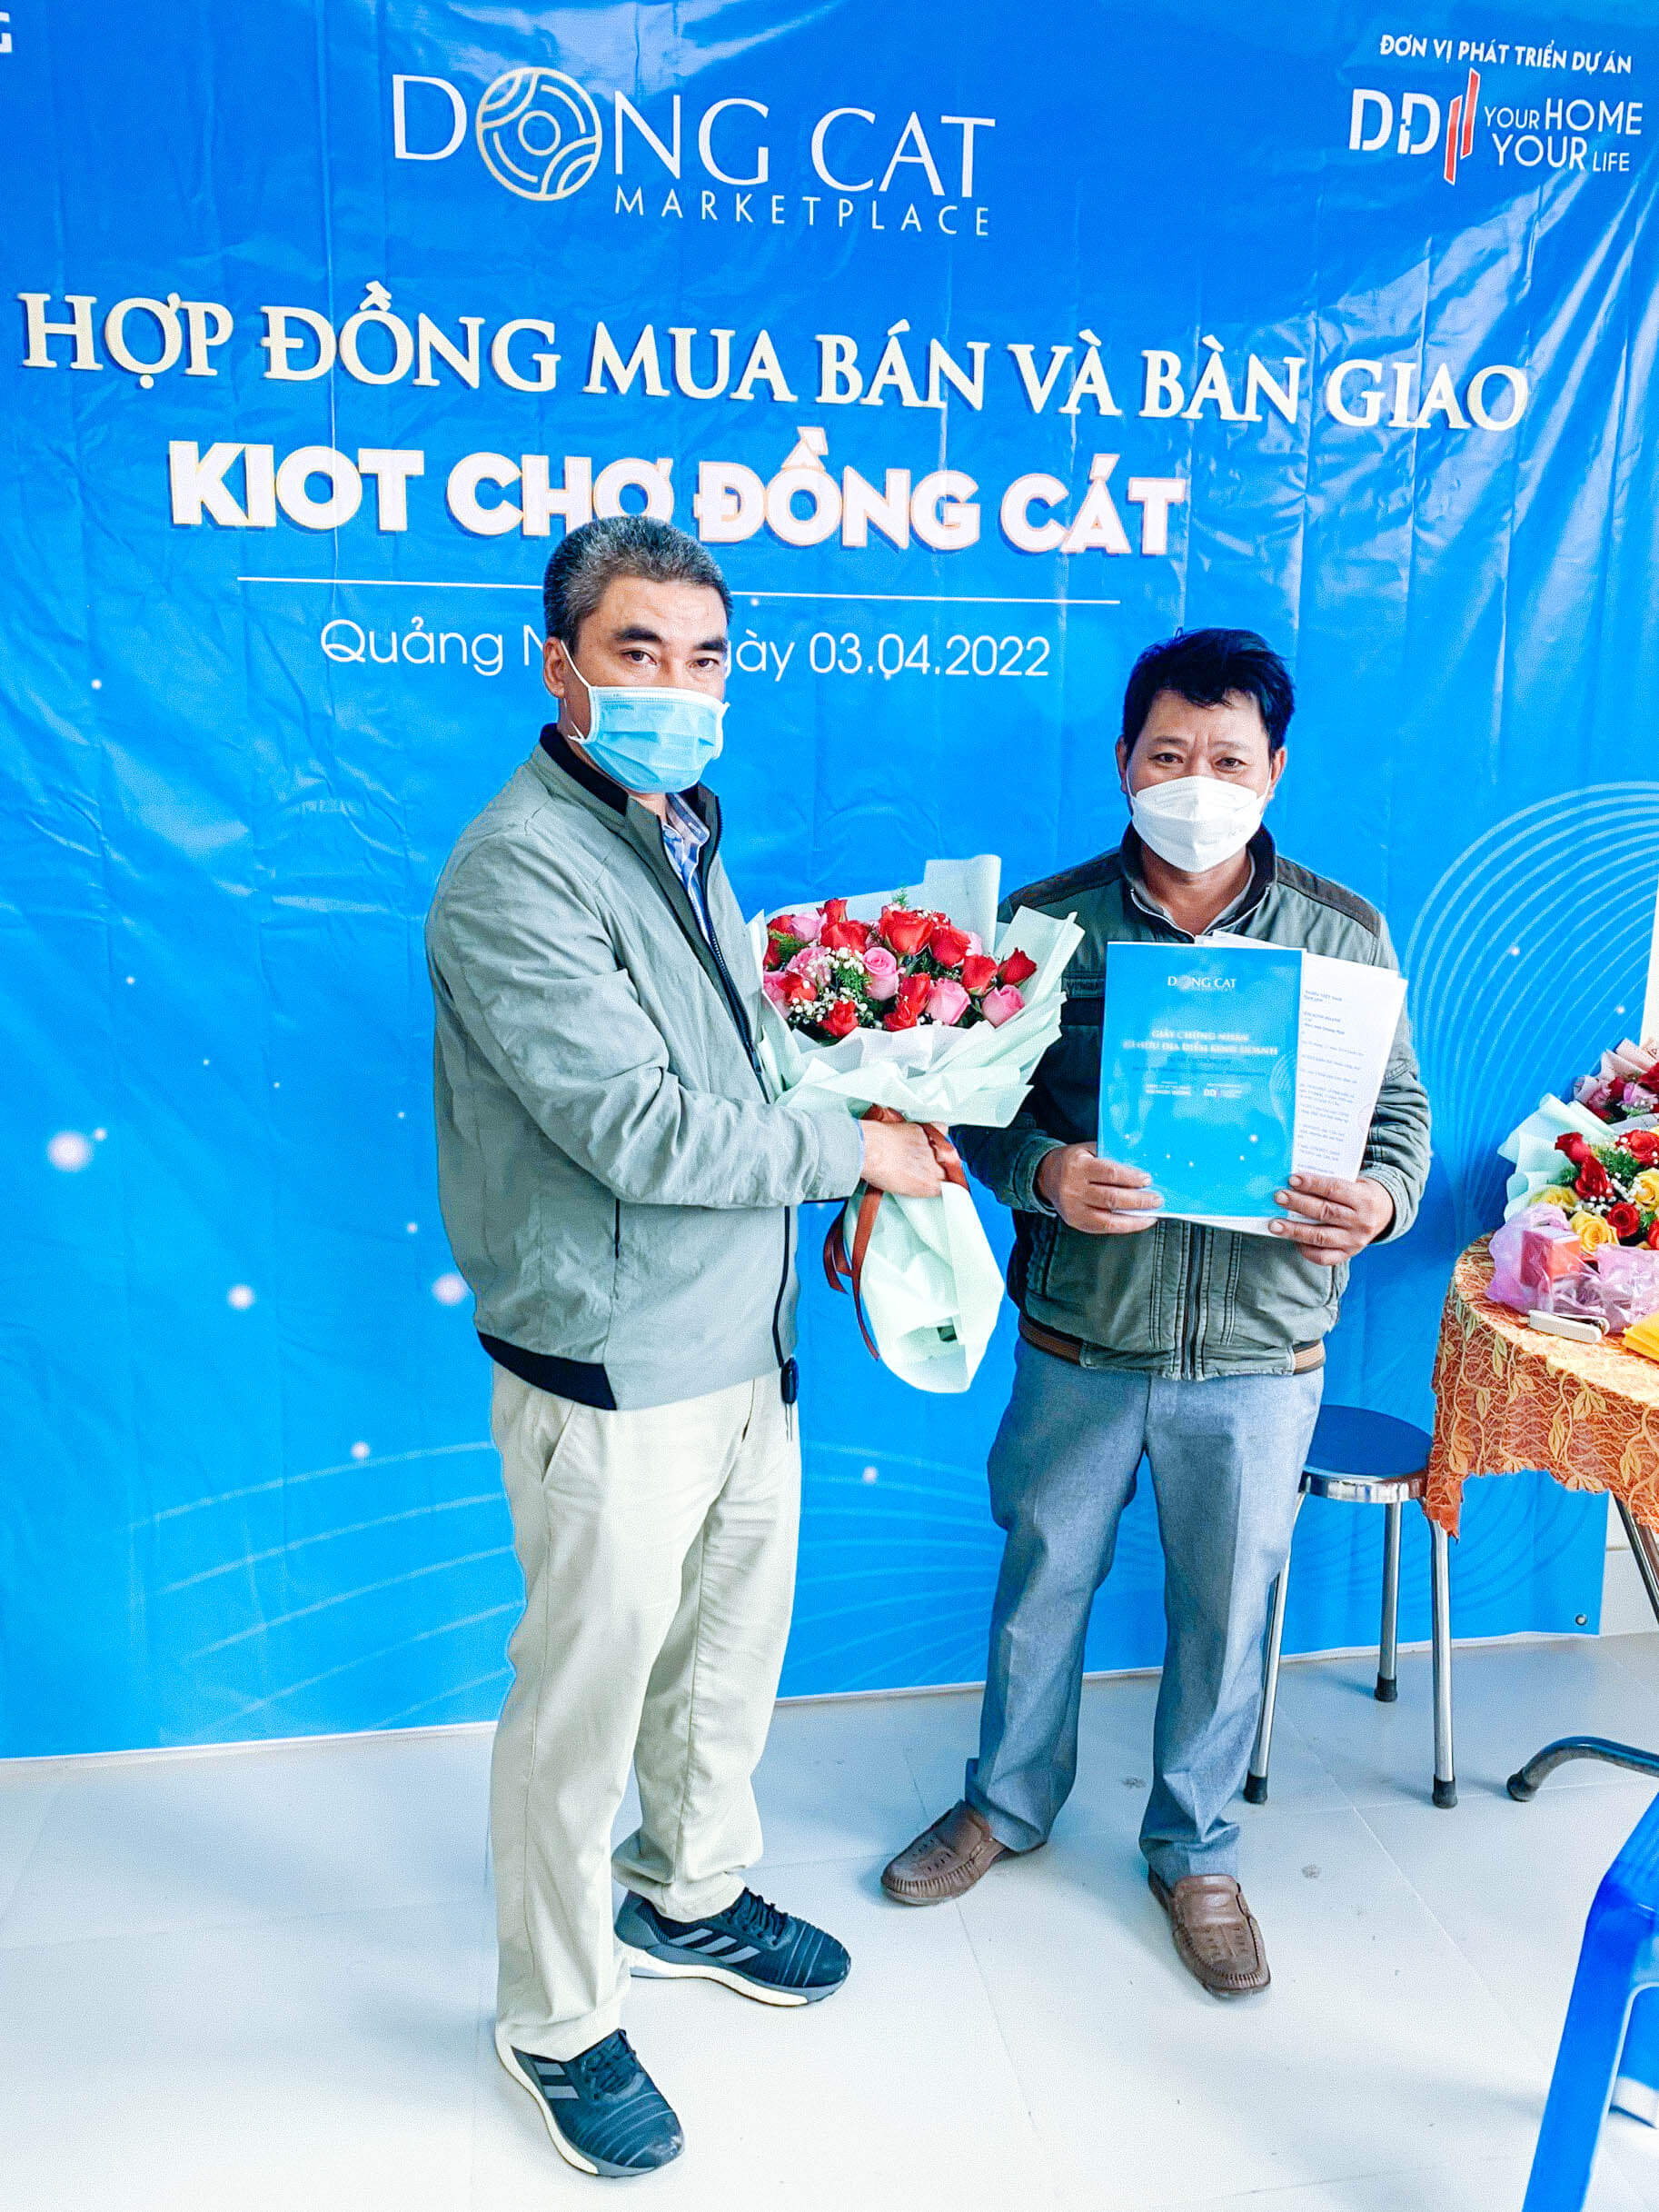 DDI tổ chức lễ ký Hợp đồng mua bán và bàn giao sản phẩm Kiot chợ Đồng Cát (Đồng Cát Marketplace).